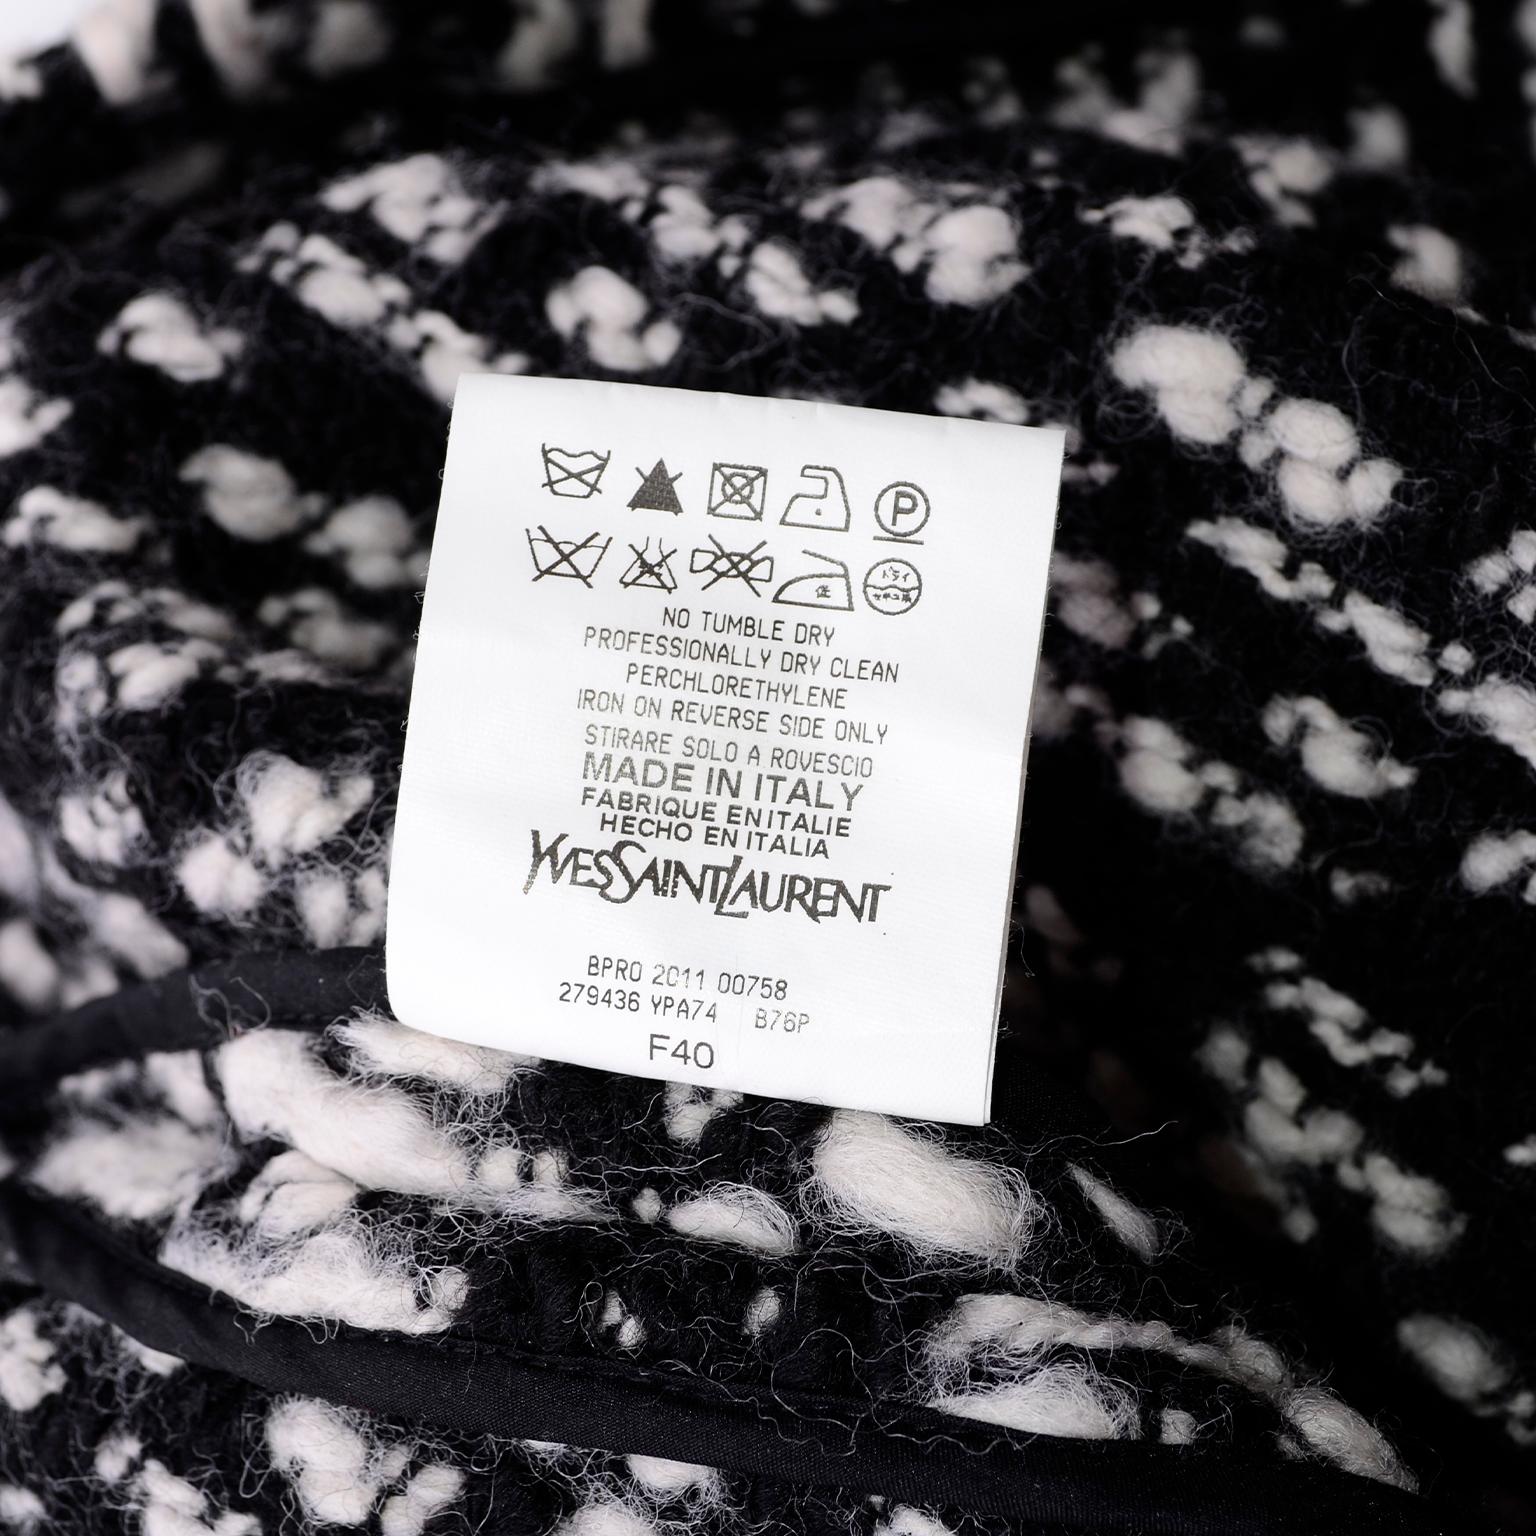 YSL Yves Saint Laurent Runway Sweater in Black and White Wool Tweed 1